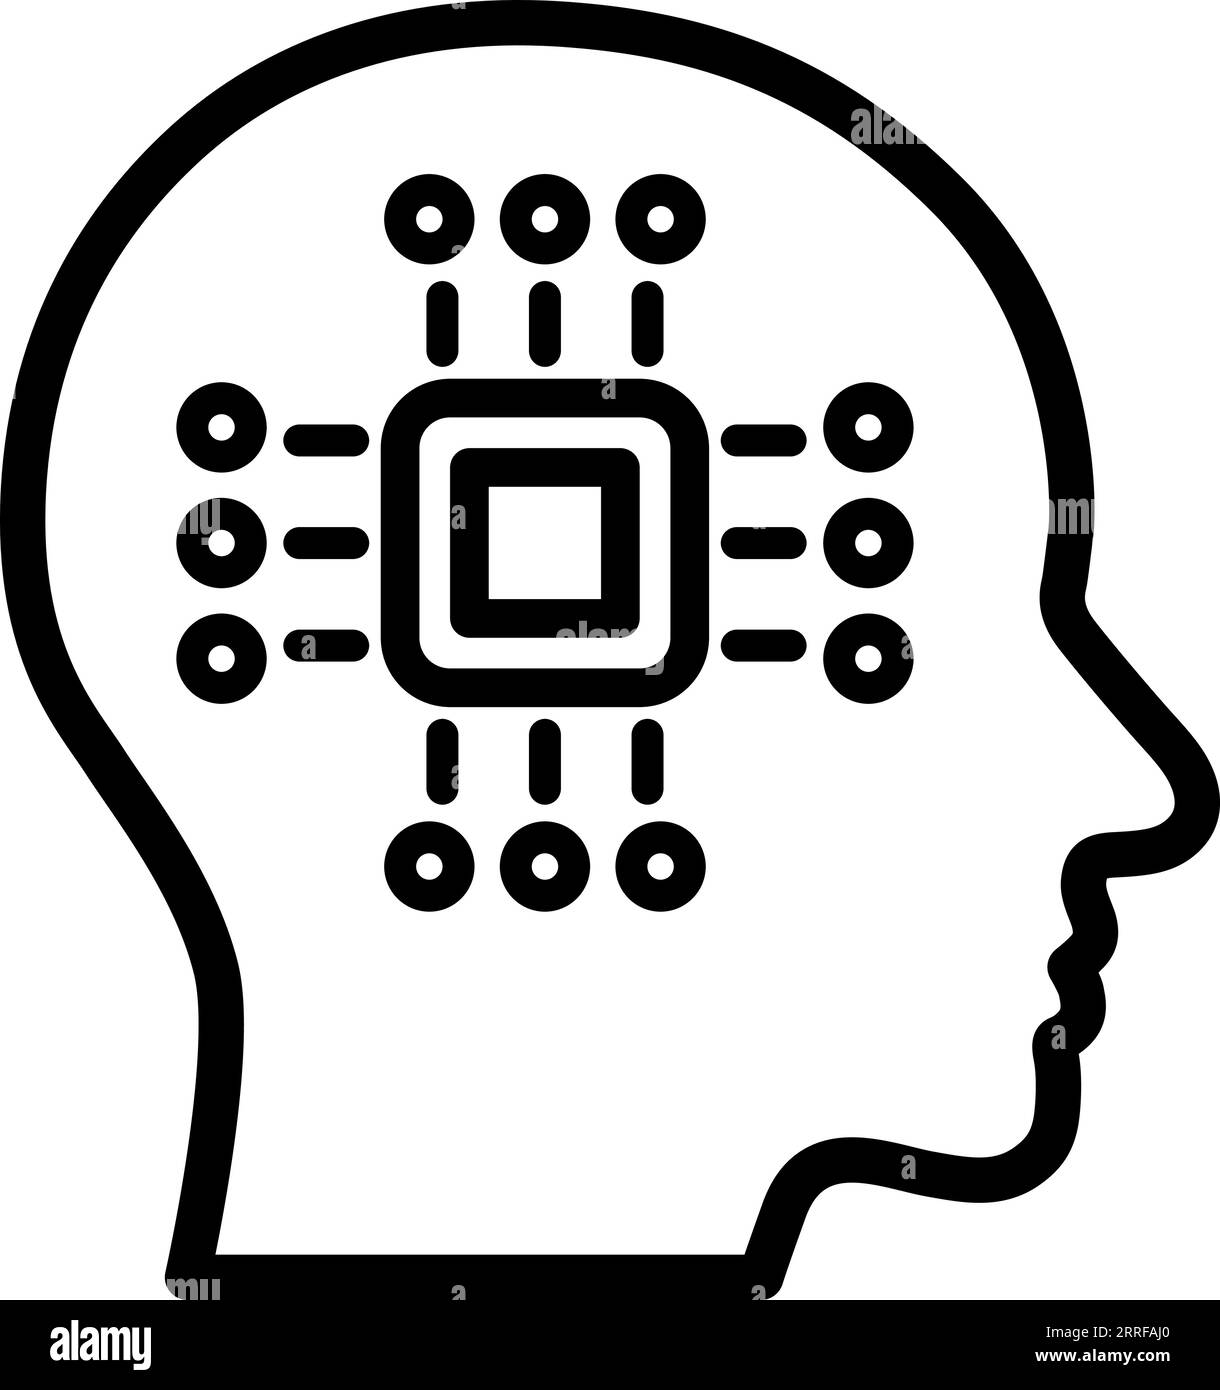 Icona lineare della tecnologia nella testa umana come concetto di progresso digitale Illustrazione Vettoriale